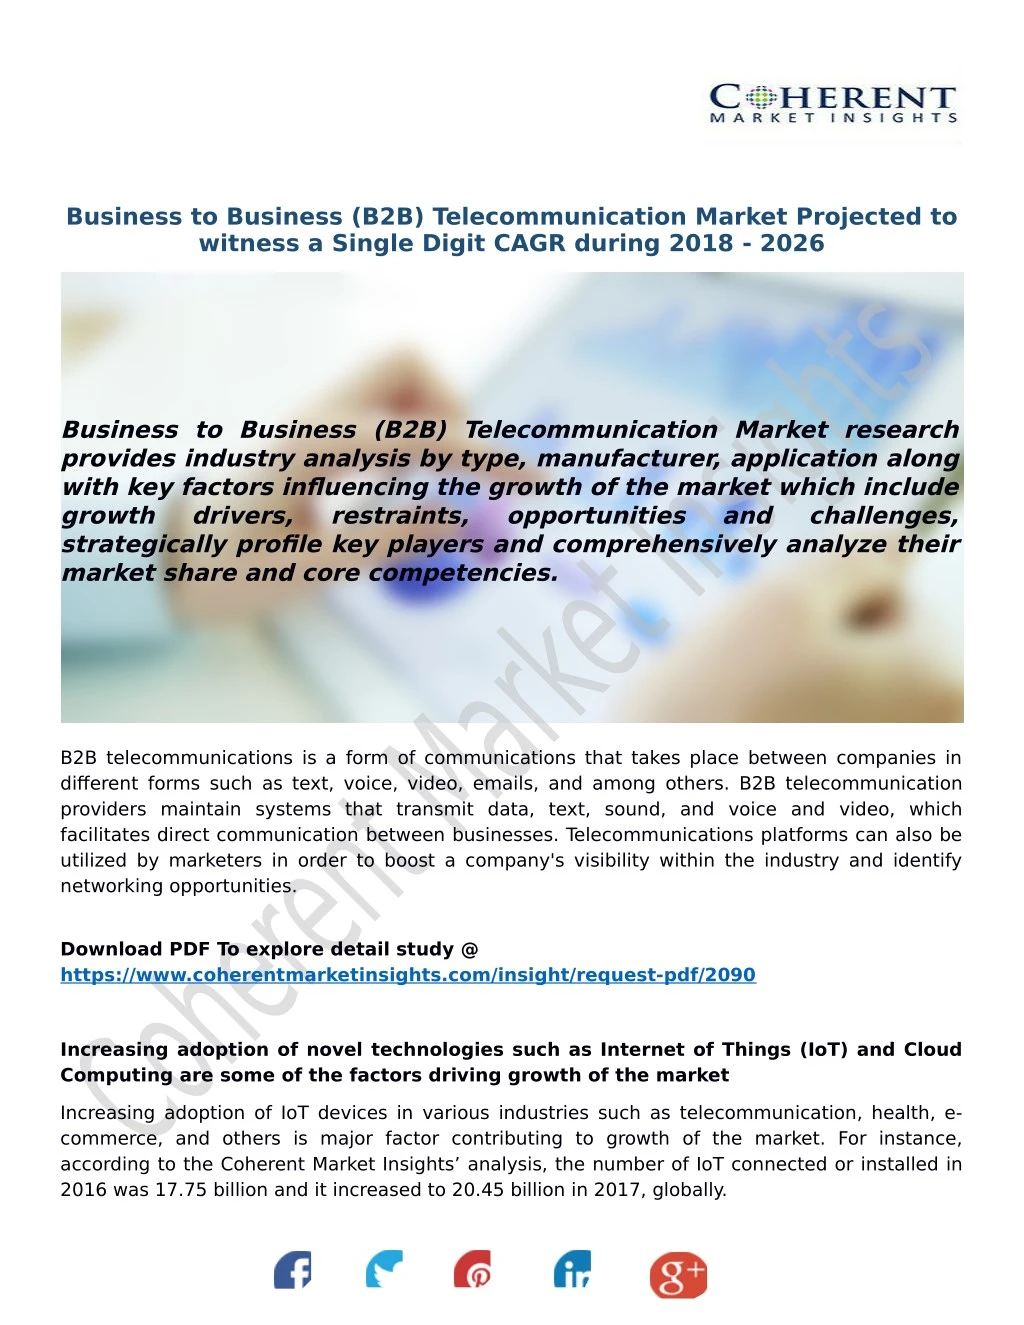 business to business b2b telecommunication market